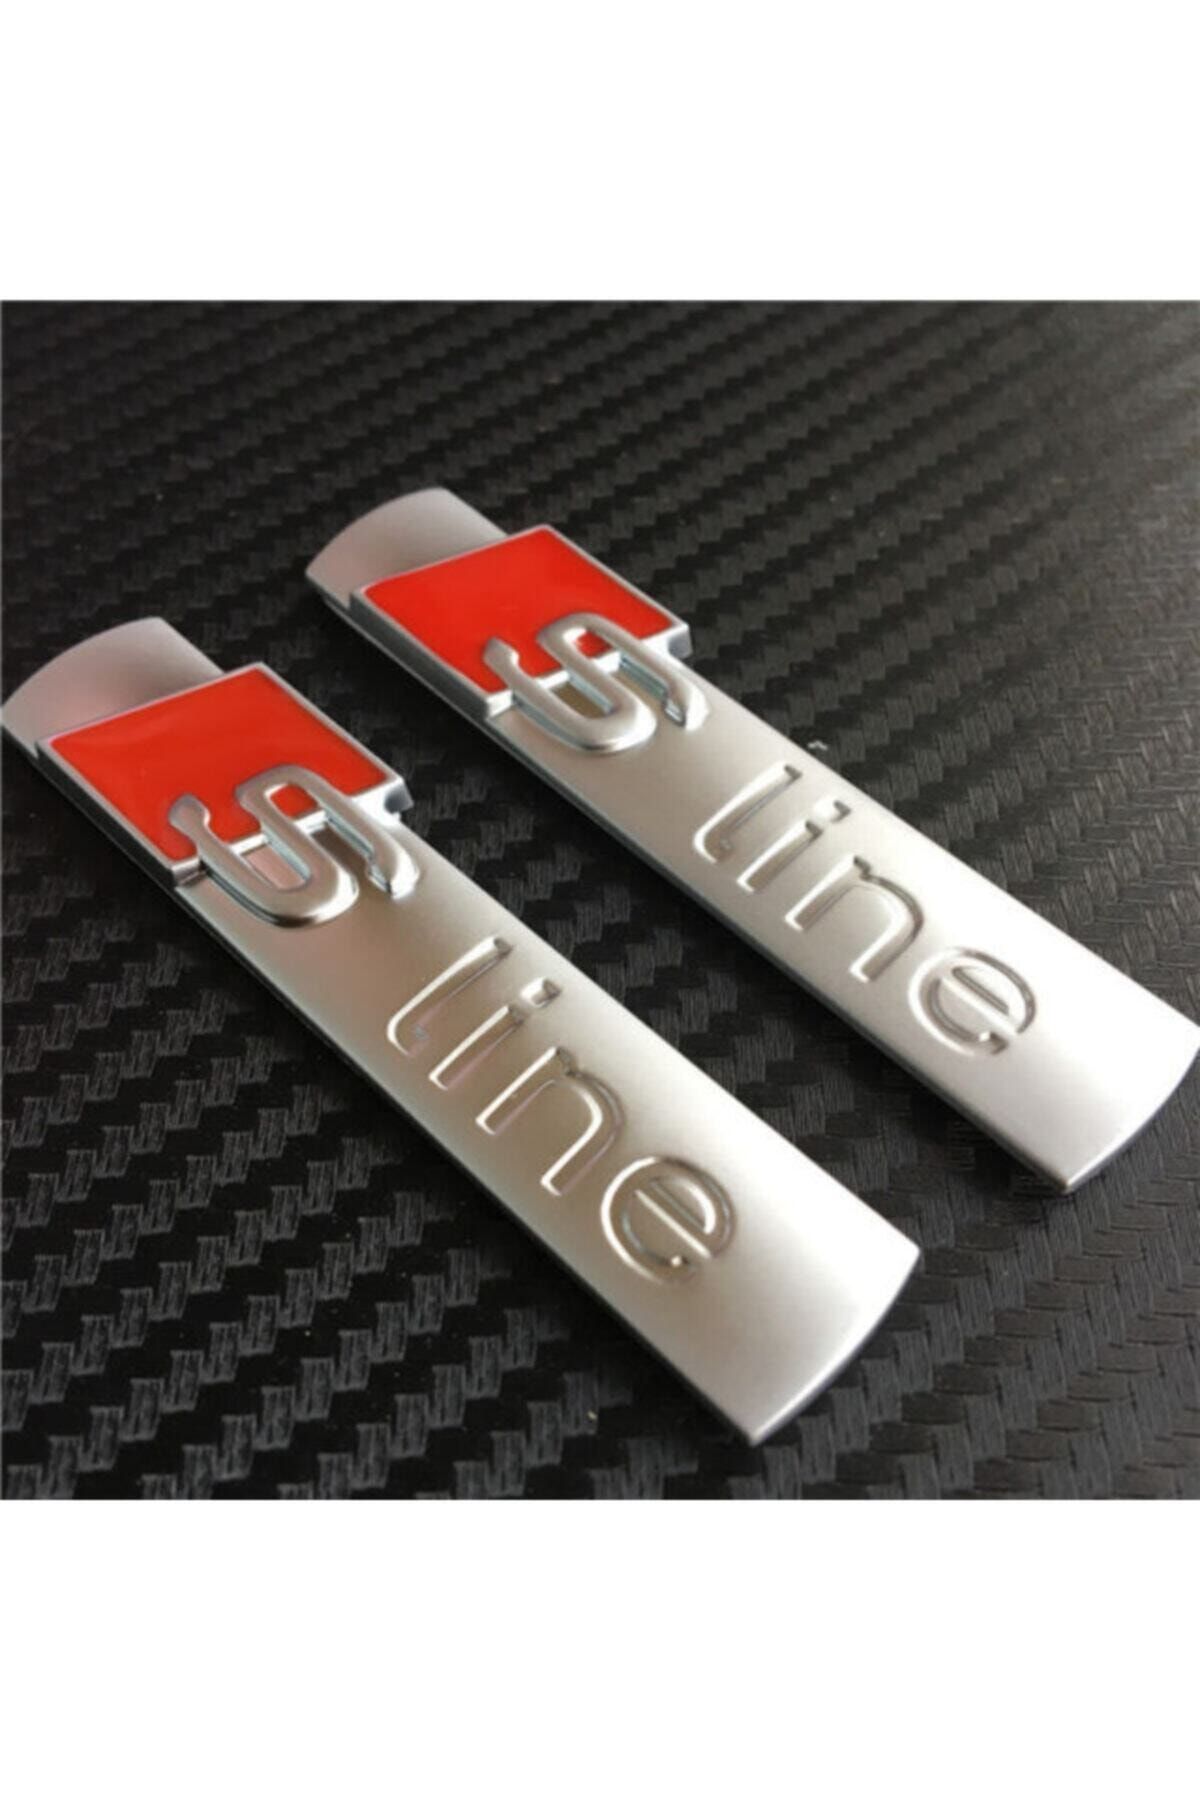 S-Line 2 Pieces Audi Fender Trunk Emblem Sticker Emblem Equivalent Audi  Sline Logo Sline S Line - Trendyol